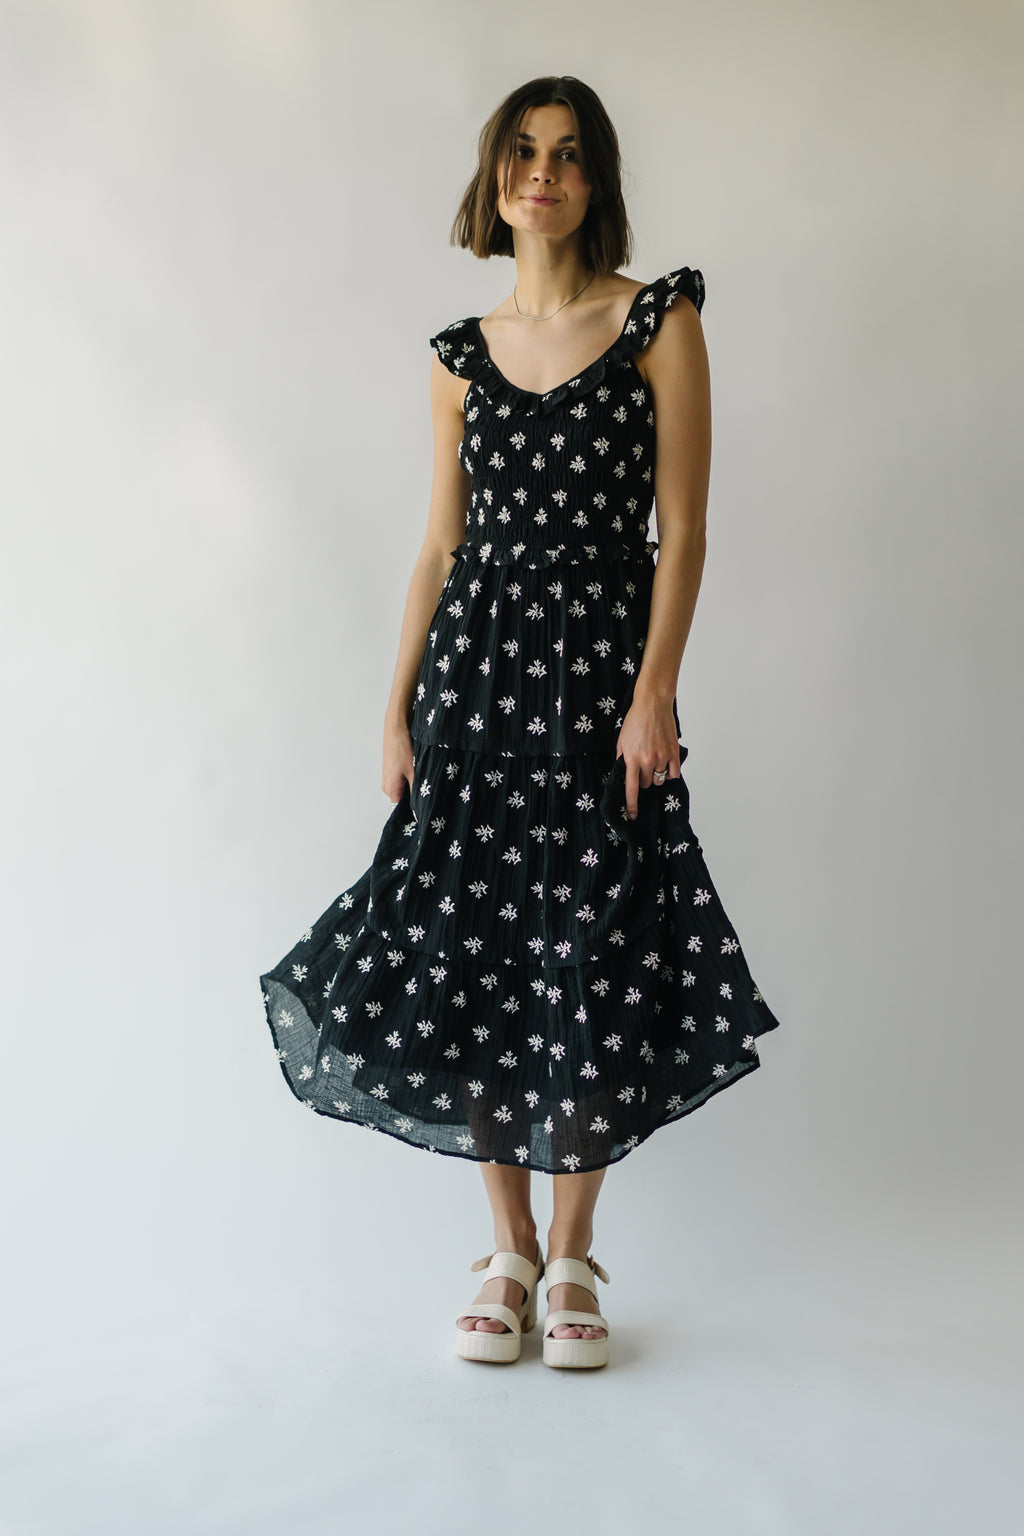 The Fantasia Floral Midi Dress in Black Multi – Piper & Scoot